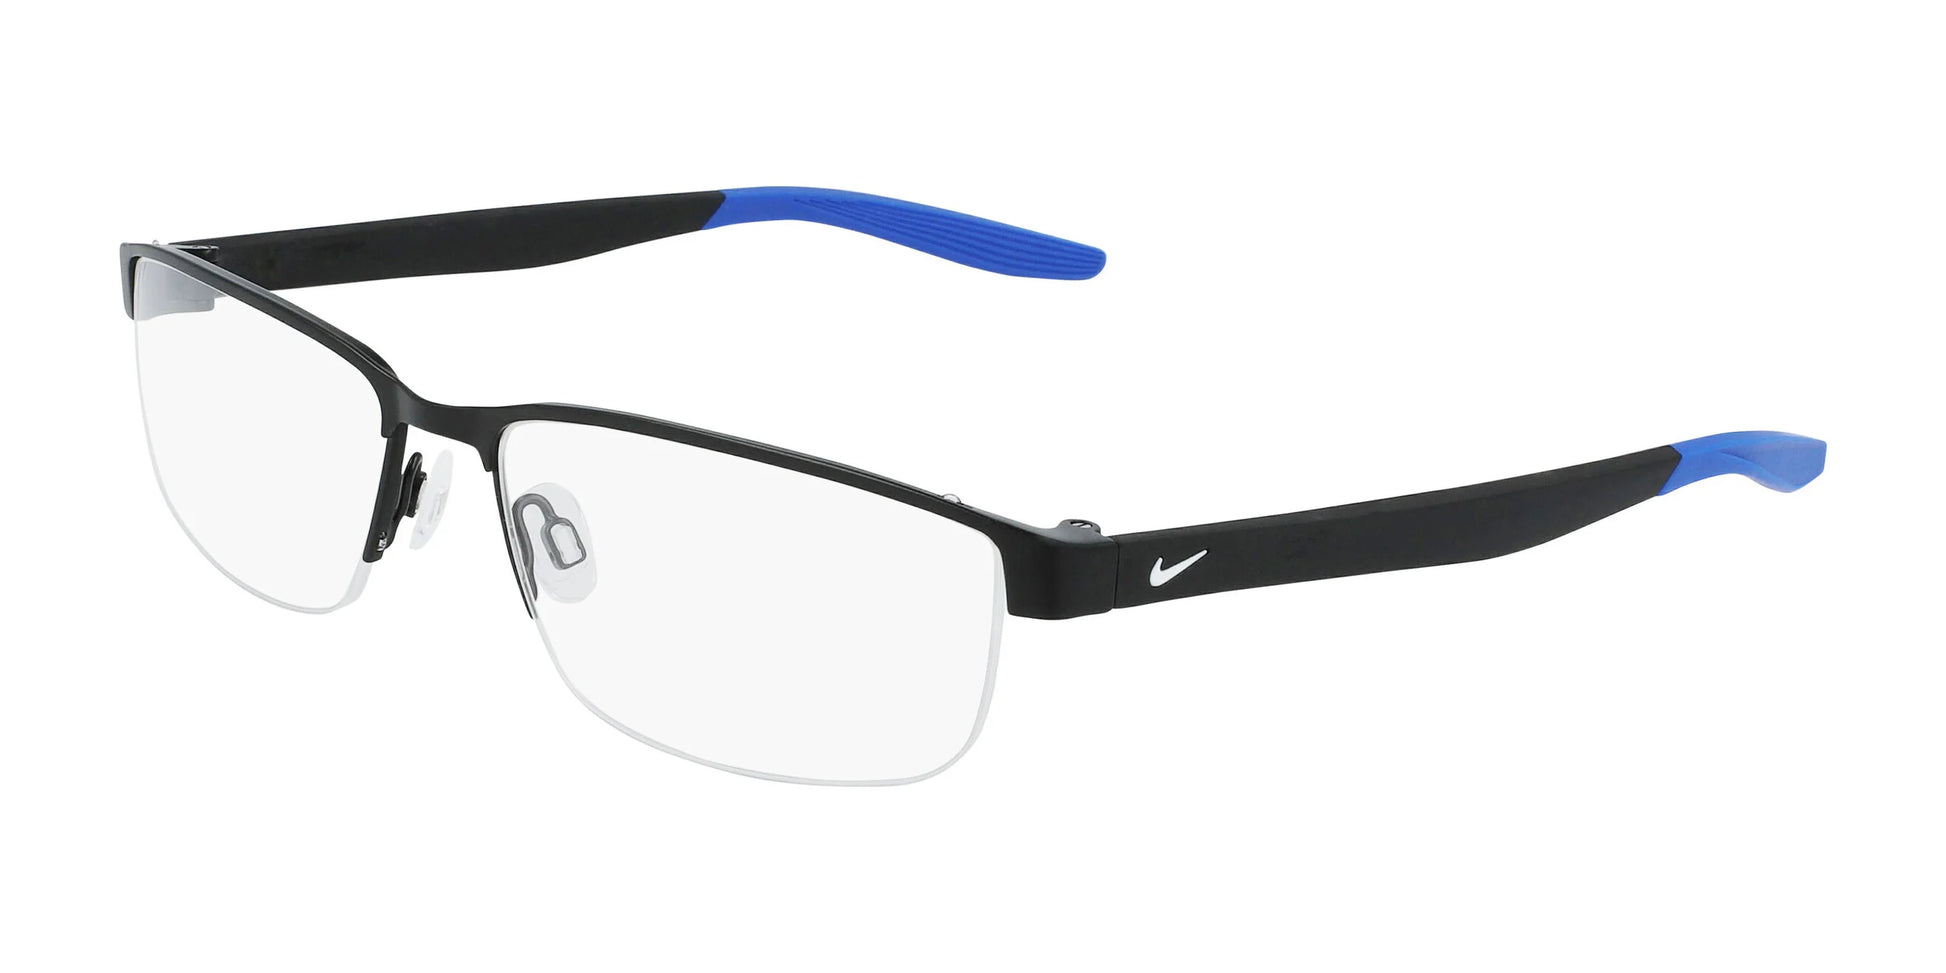 Nike 8138 Eyeglasses Satin Black / Racer Blue